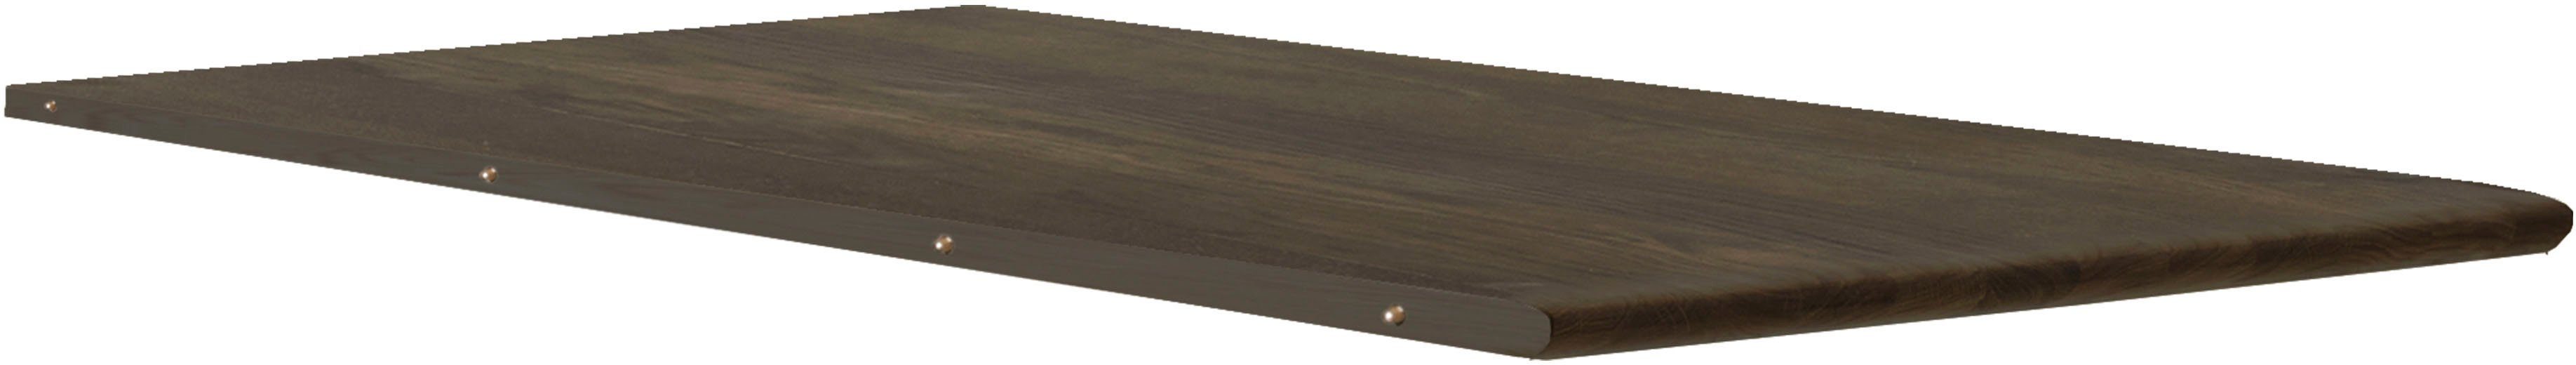 Hammel Furniture Esstischplatte Findahl by Hammel Nohr, 50x120 cm, Eiche Massivholz für Nohr Esstisch | Esstischplatten